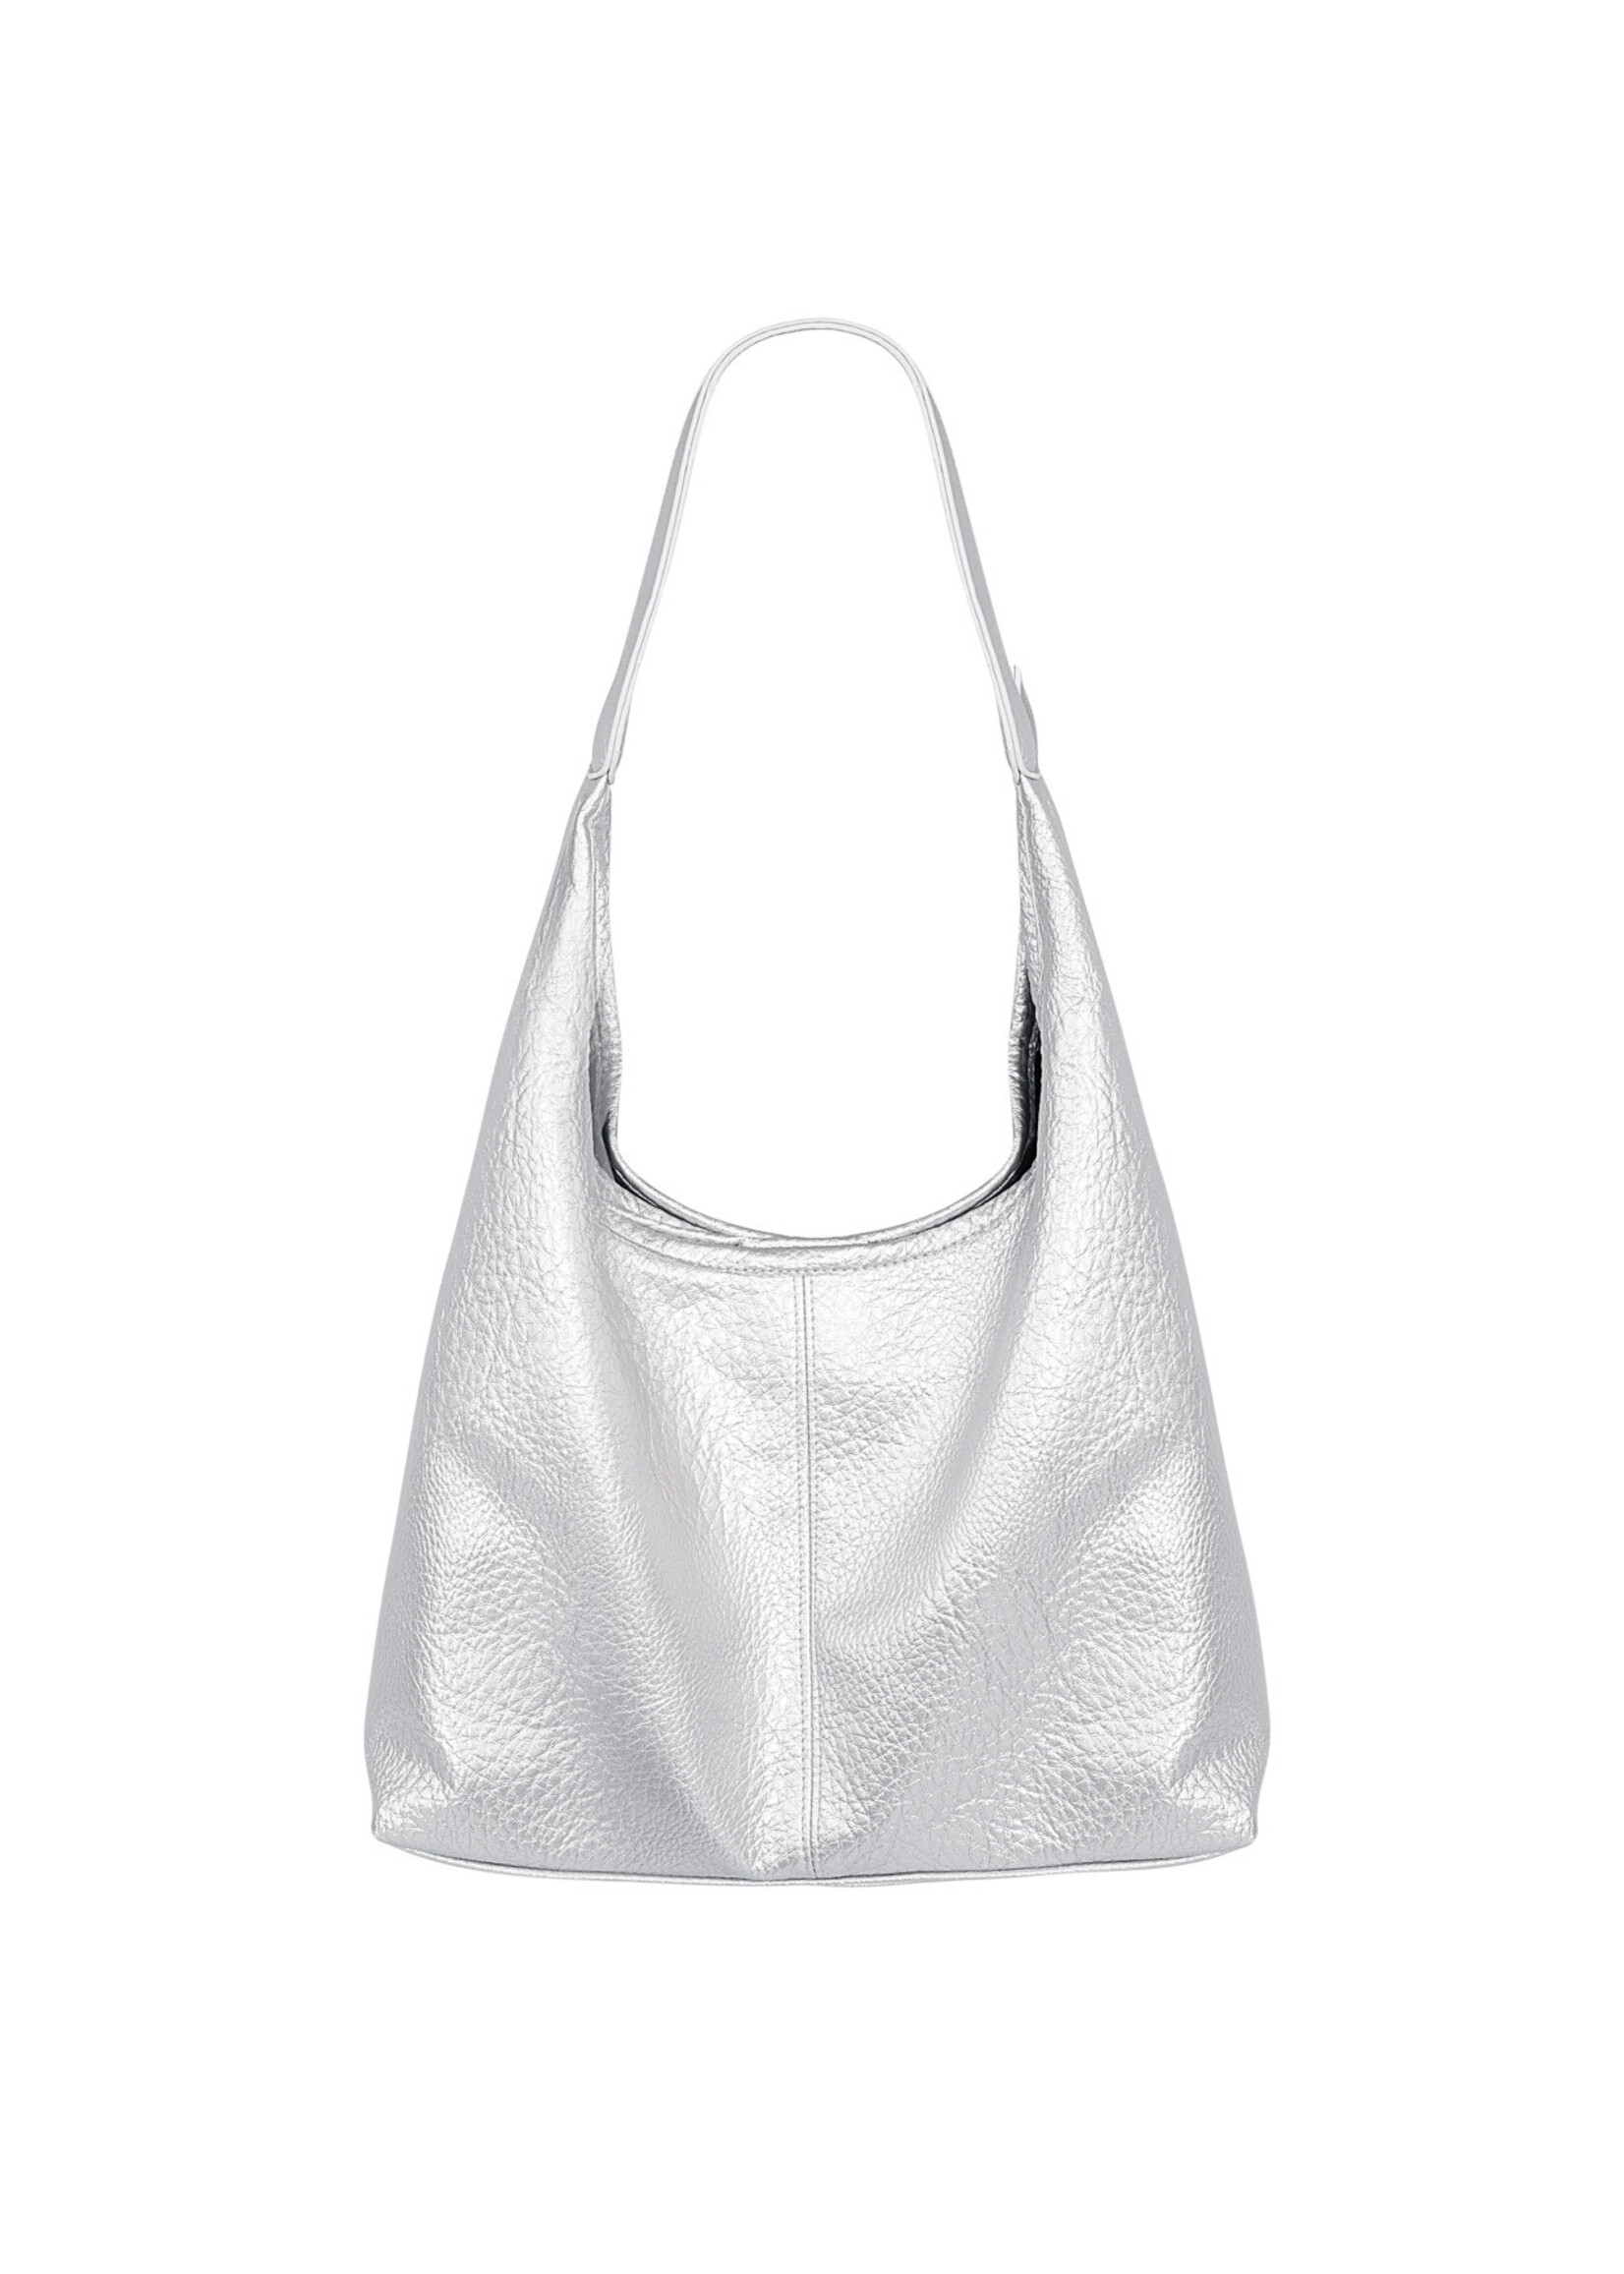 Shopper bag - silver colored